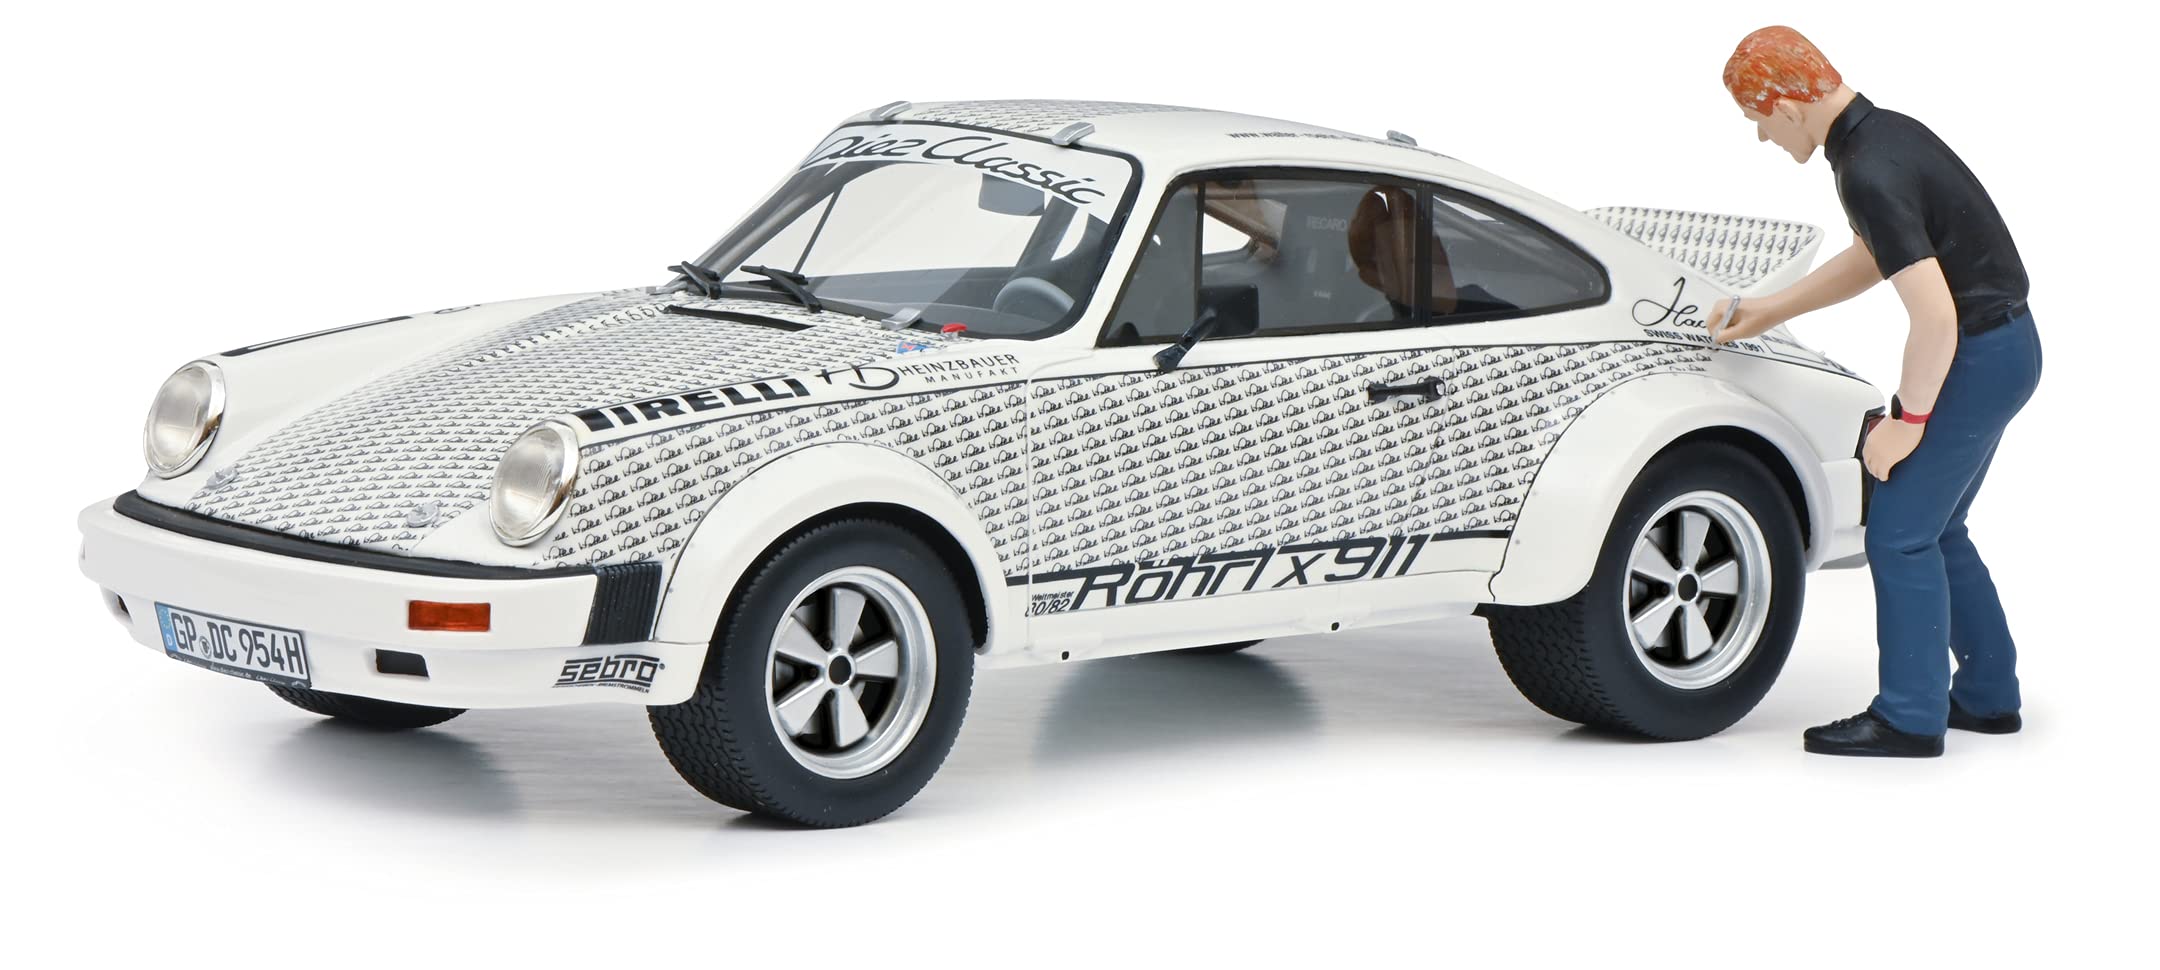 Schuco 450024900 Porsche Röhrl x911, mit Figur, Modellauto, Maßstab 1:18, Limited Edition 911, Resin, weiß, Mehrfarbig